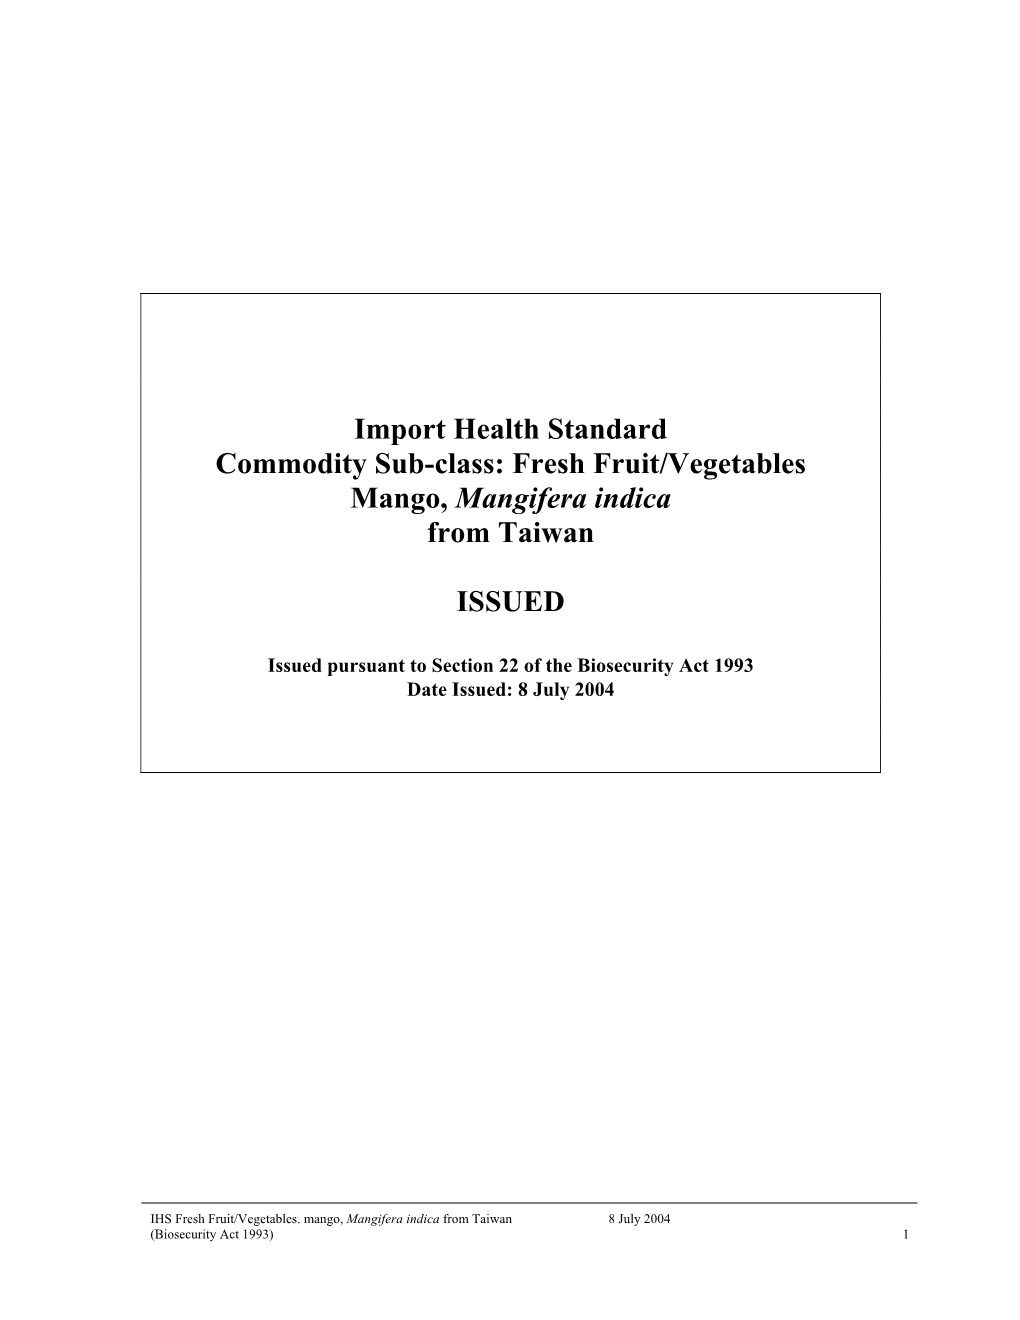 IHS Fresh Fruit/Vegetables